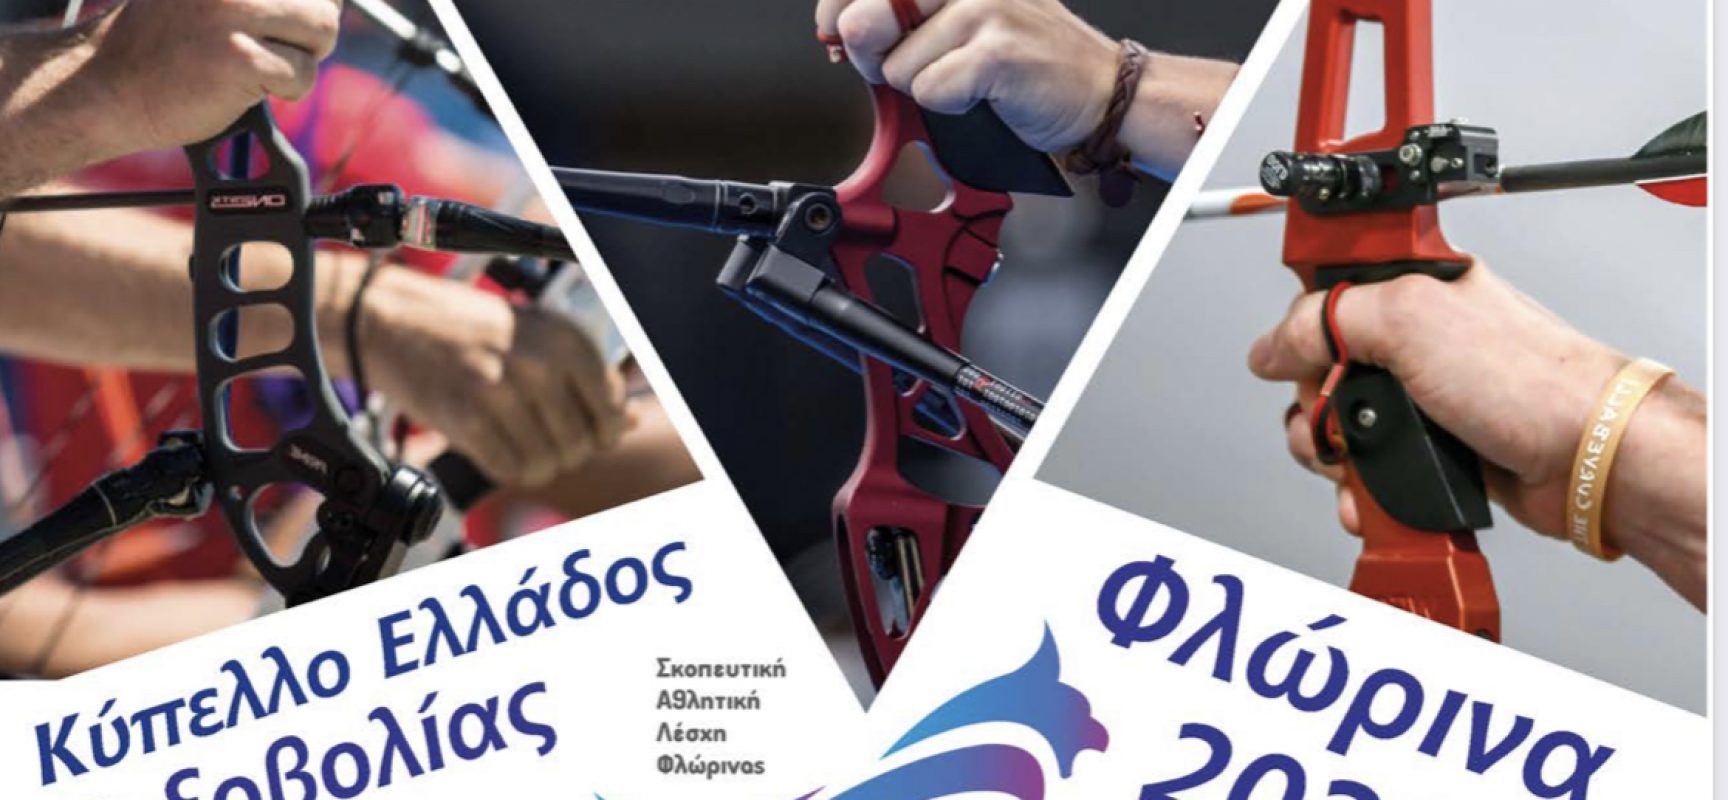 Ωρολόγιο πρόγραμμα Κυπέλλου Τοξοβολίας Ελλάδος 2022  Ολυμπιακού, Σύνθετου & BAREBOW  Τόξου Φλώρινα Σάββατο 17 & Κυριακή 18 Σεπτεμβρίου 2022